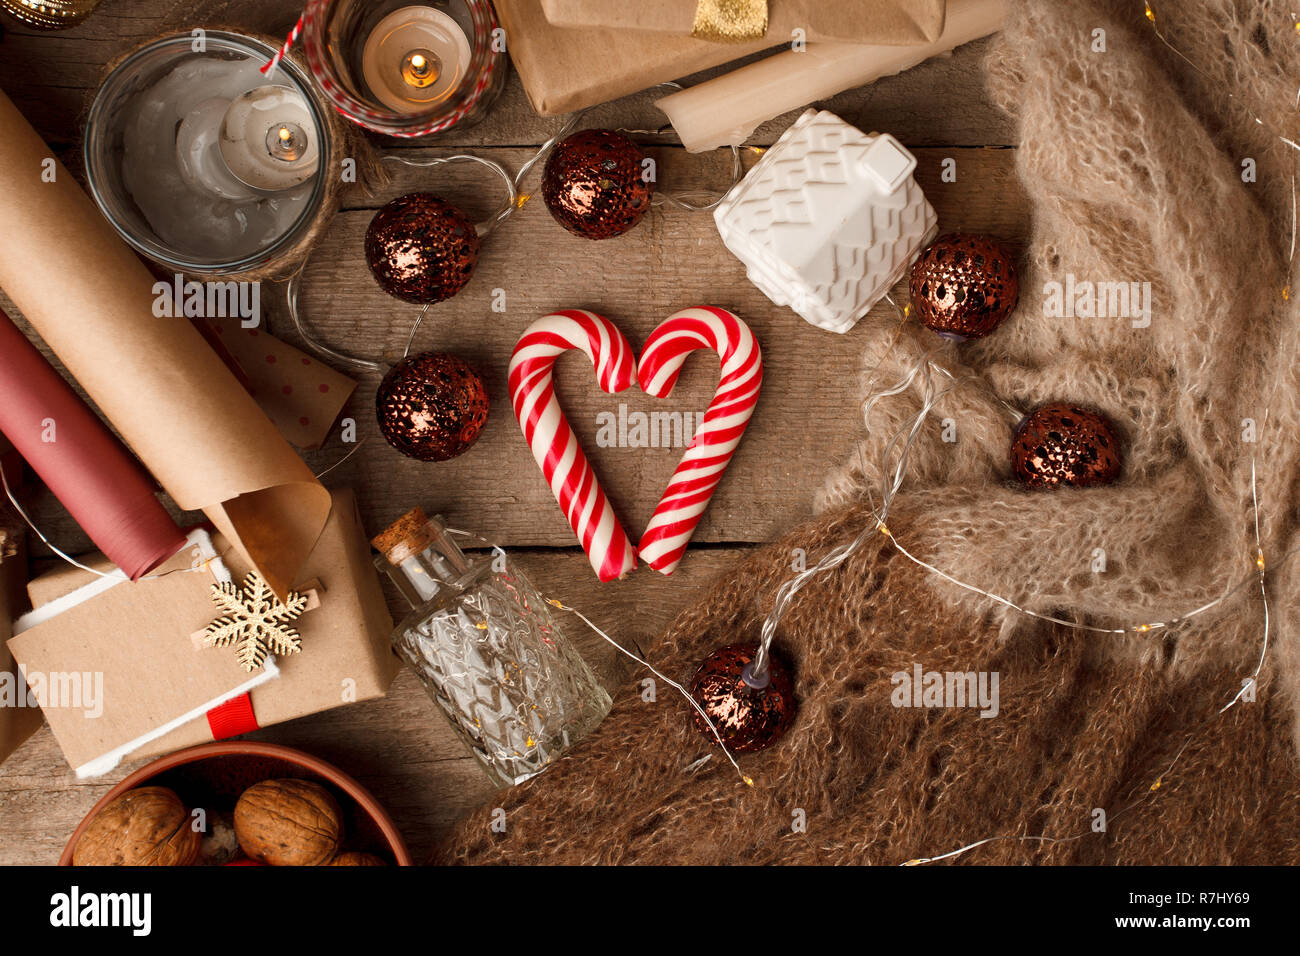 Ambiance de Noël encore la vie sur un fond de bois avec canne de sucrerie en forme de coeur, Happy holidays boîte cadeau, bougies et lumières, fond de noël, instagram Banque D'Images